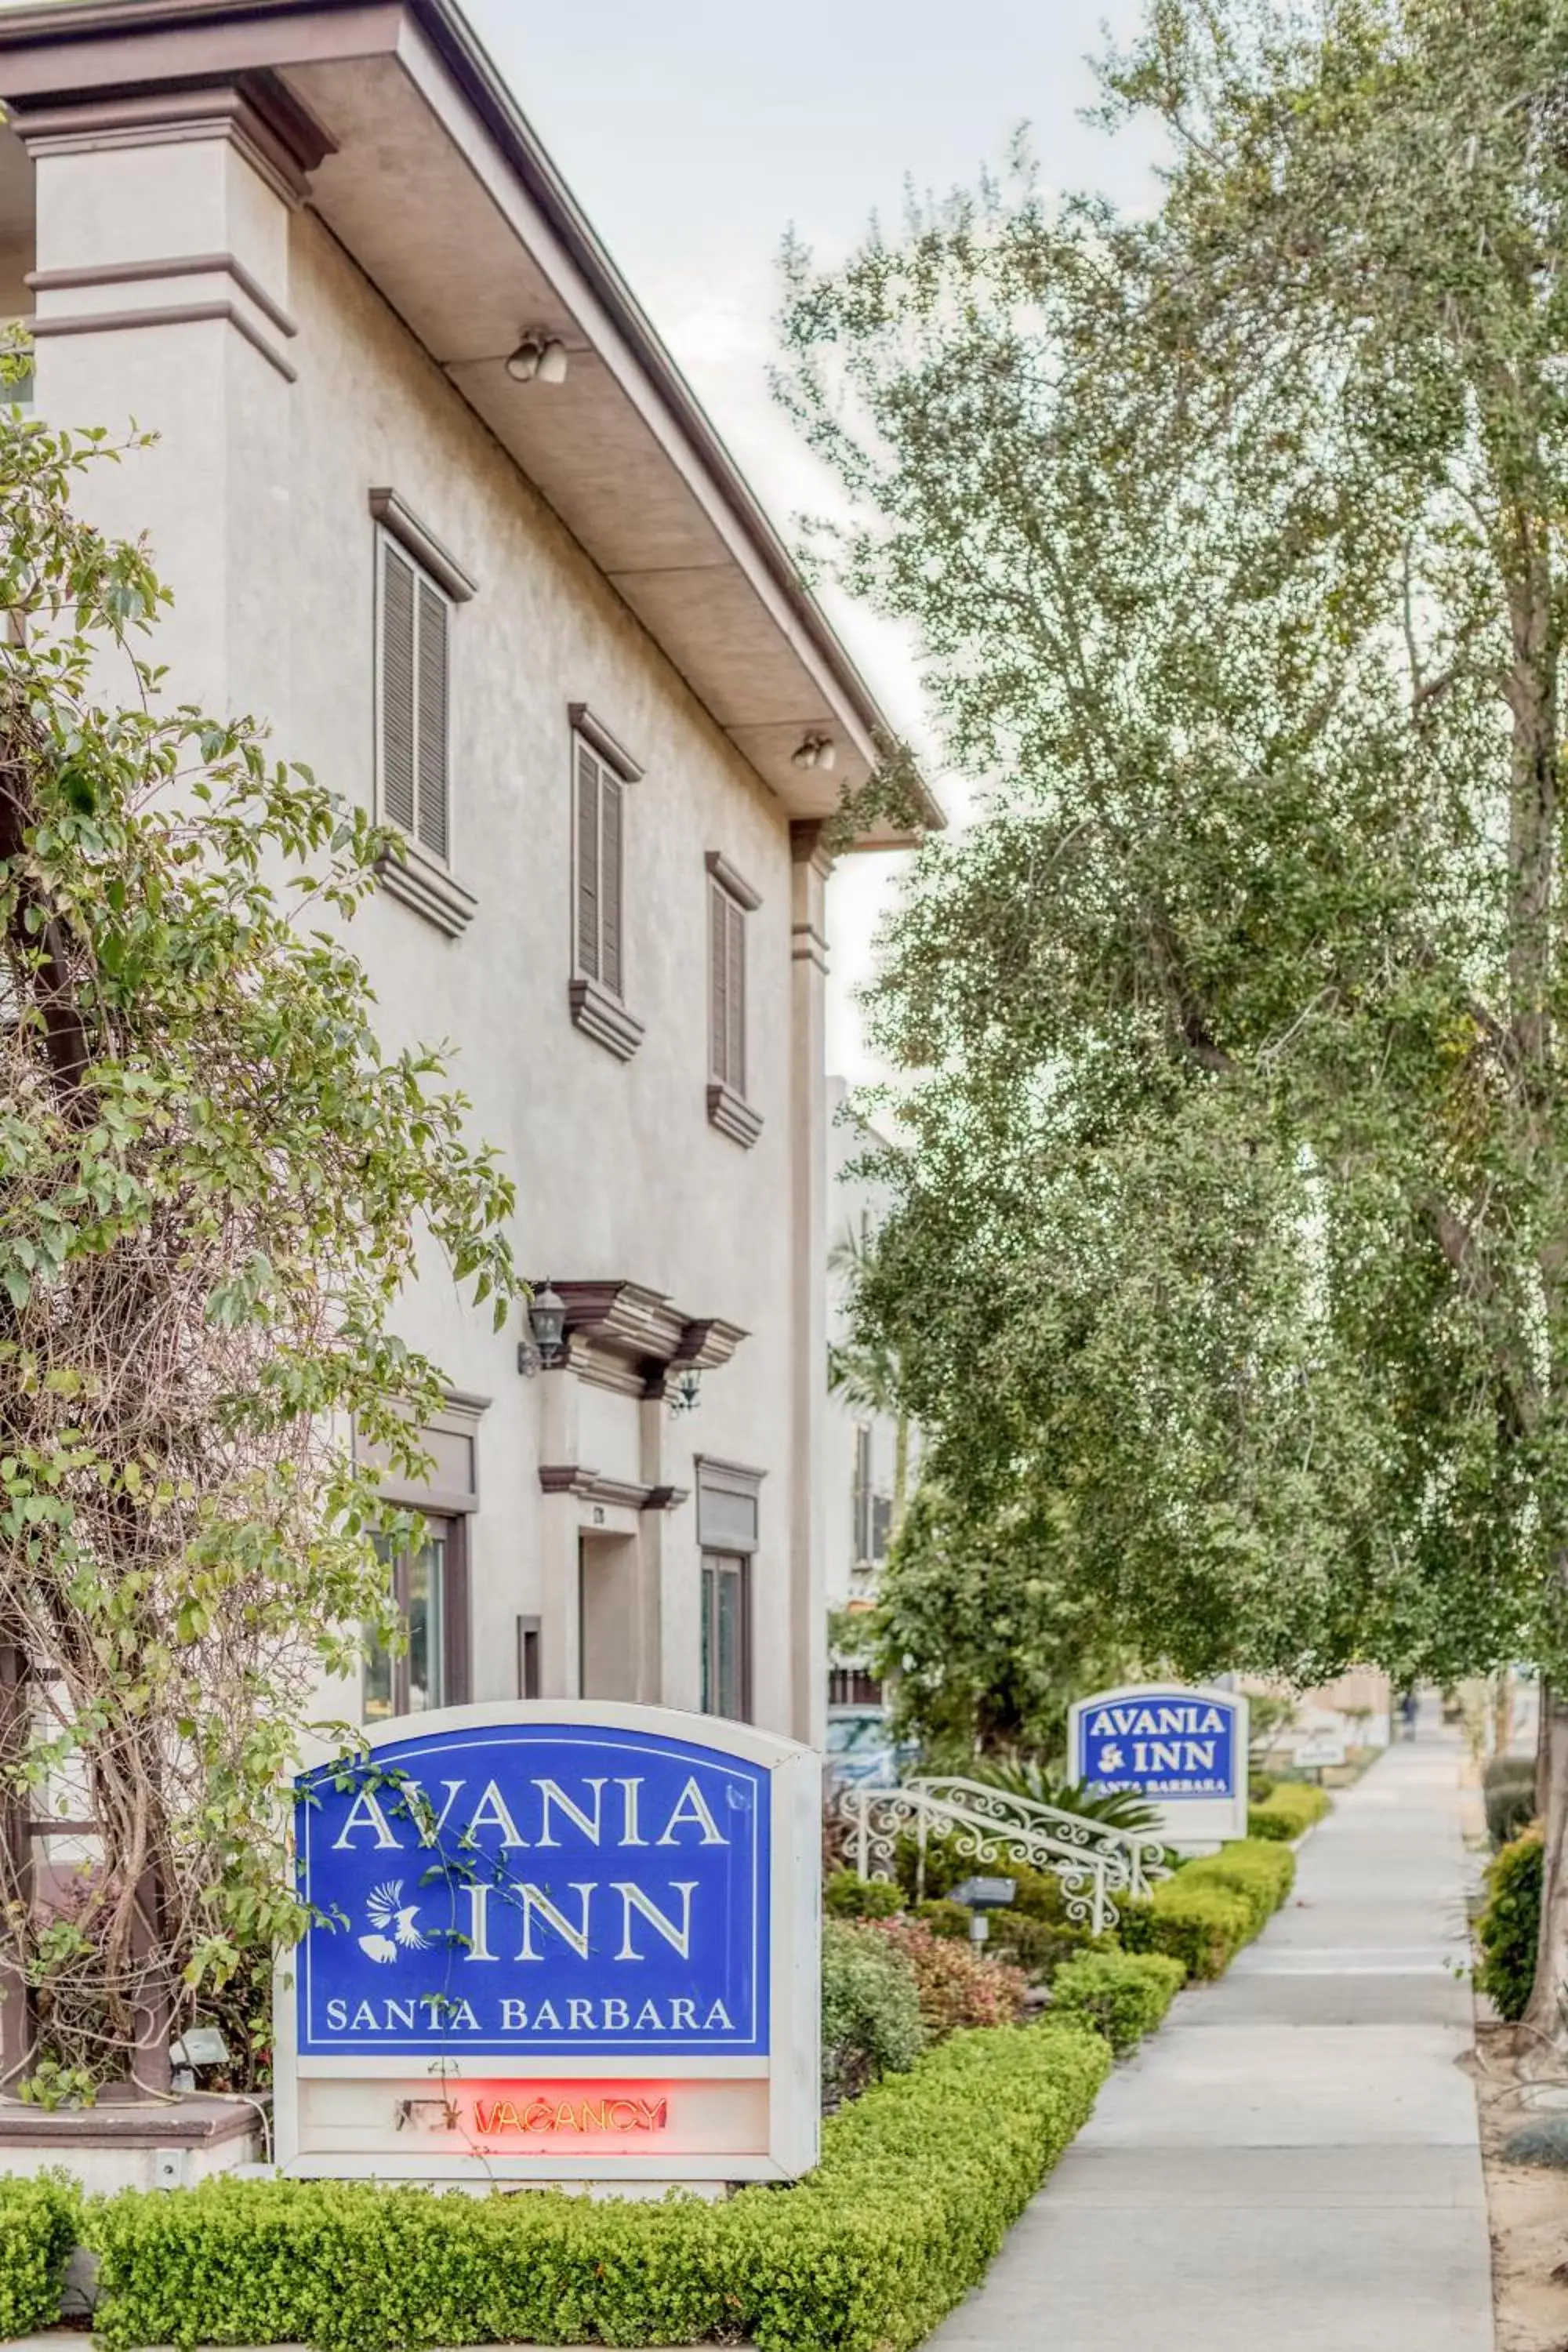 Property building in Avania Inn of Santa Barbara